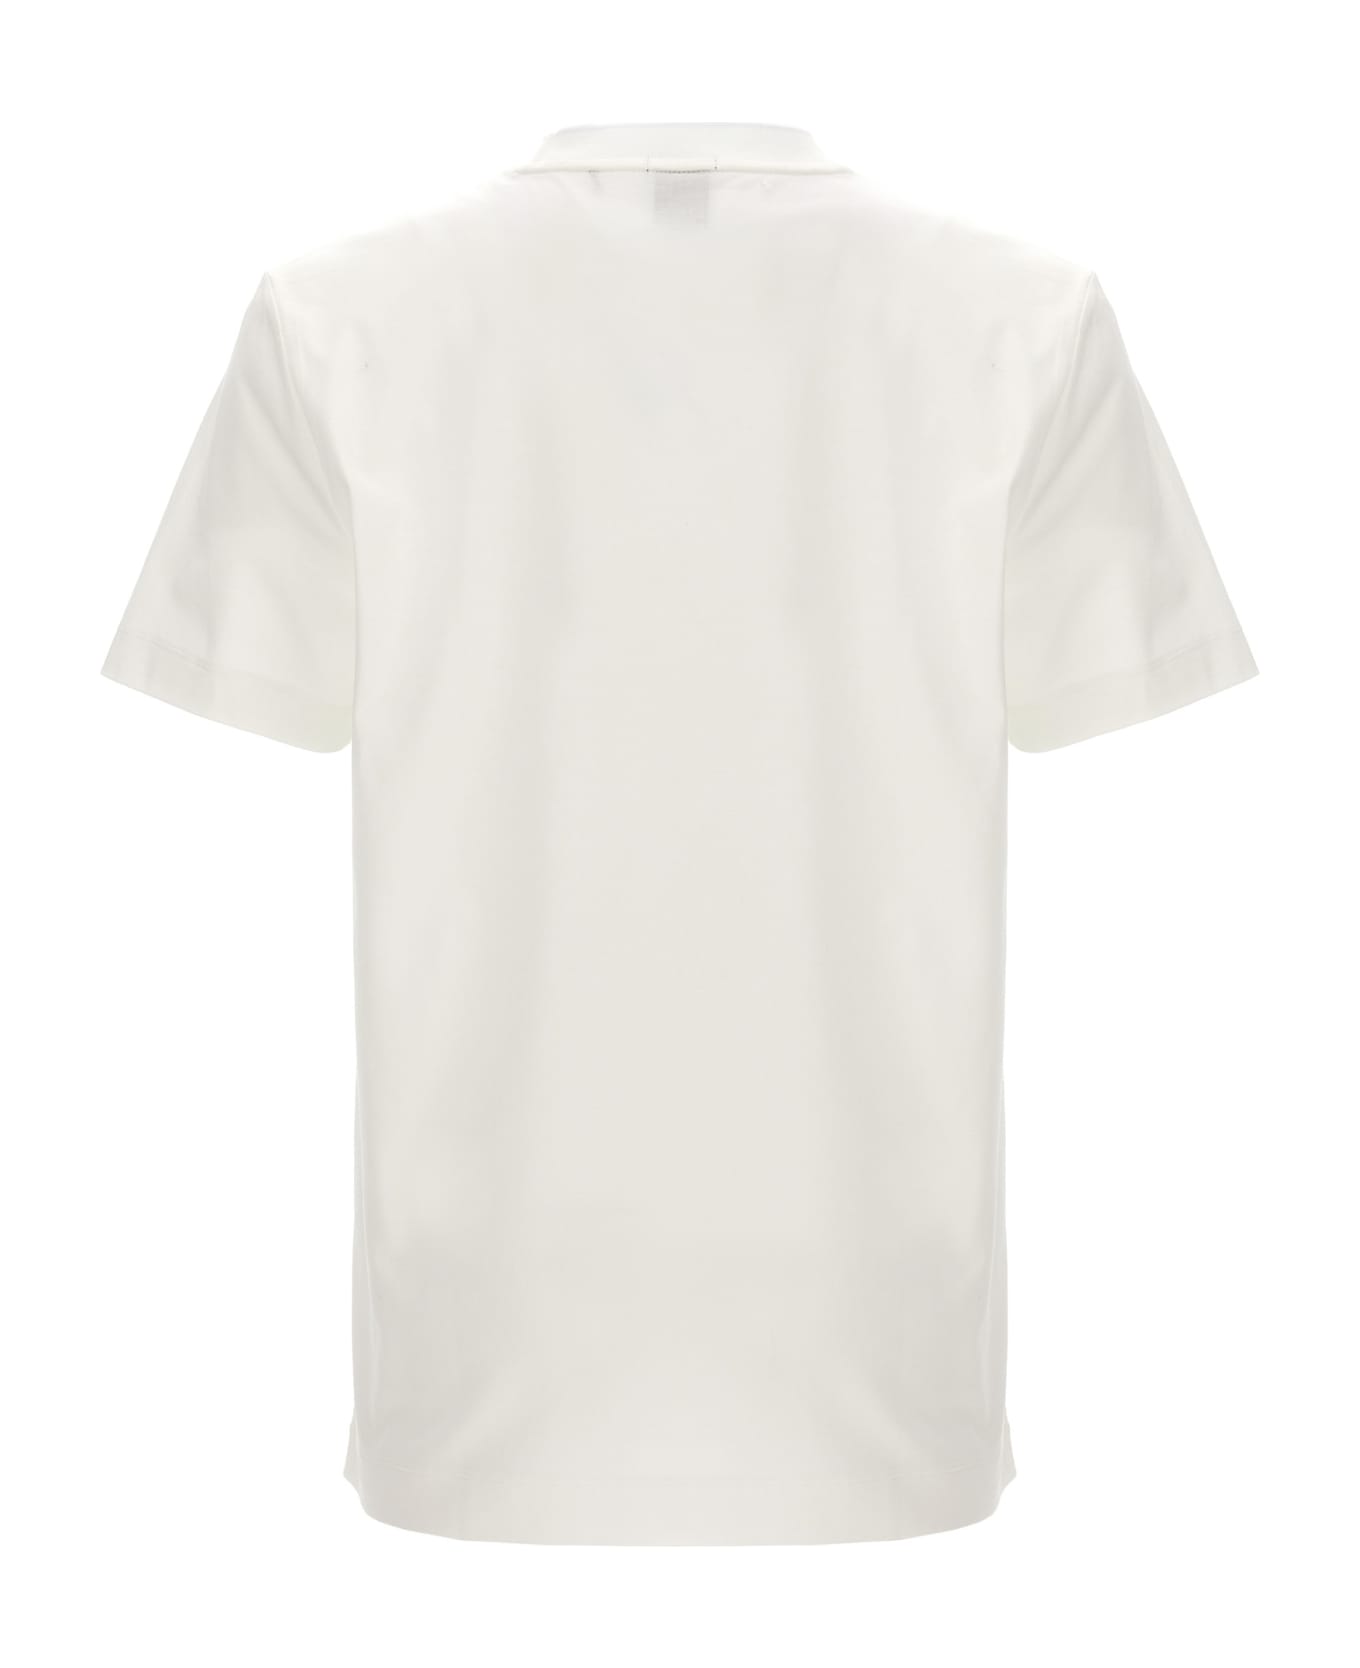 Hugo Boss Logo T-shirt - White